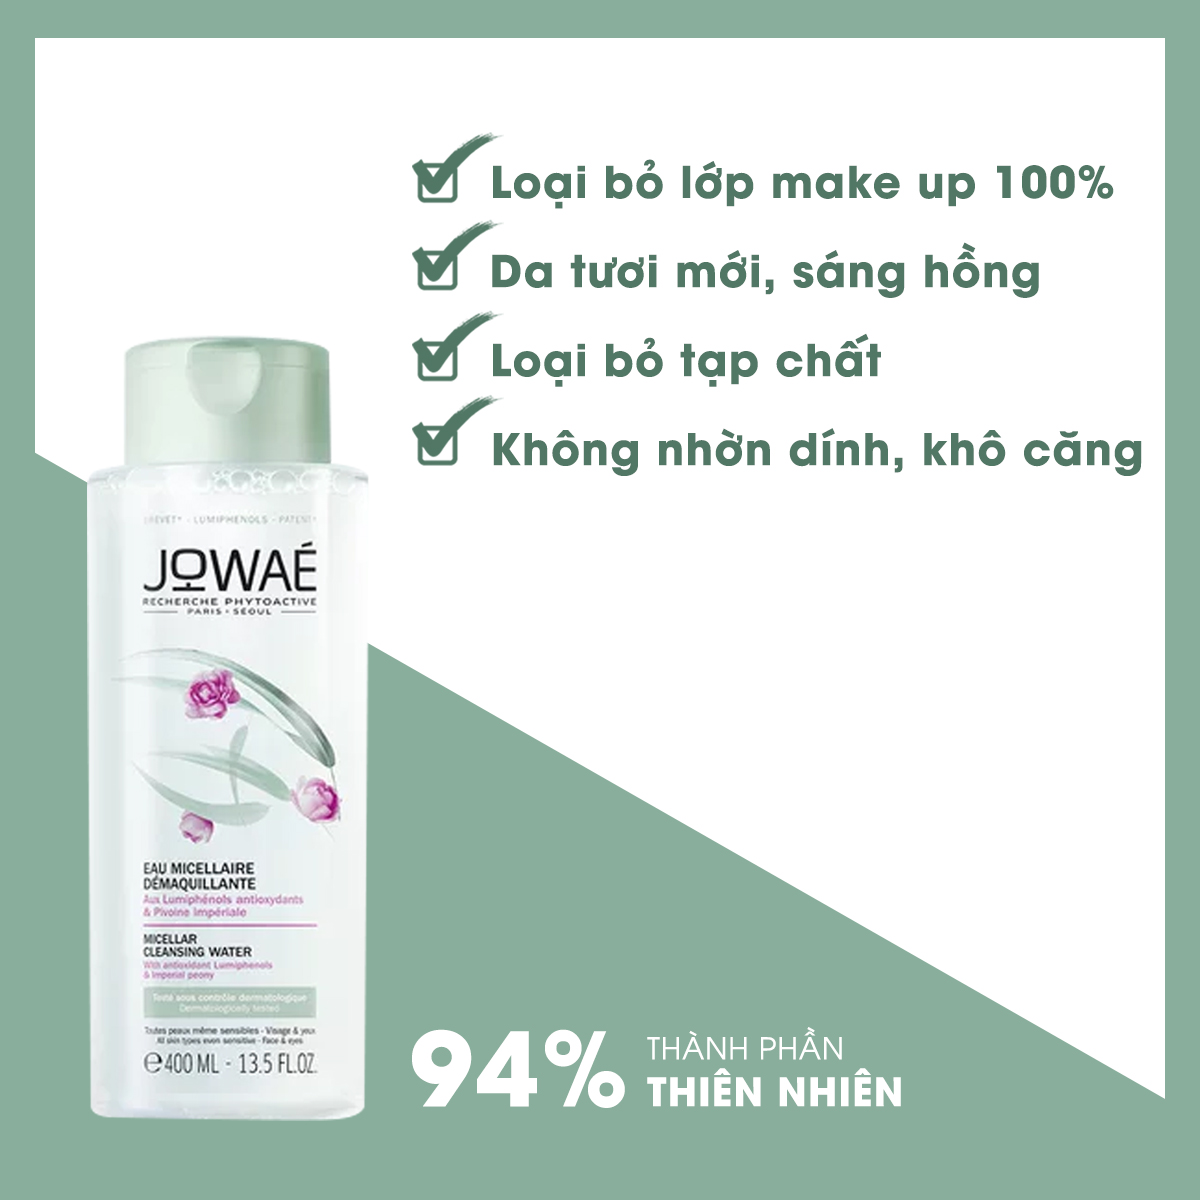 nước tẩy trang loại bỏ make up jowae 100% làm sạch da không nhờn dính và khô căng mỹ phẩm thiên nhiên nhập khẩu pháp micellar cleansing water 400ml 3